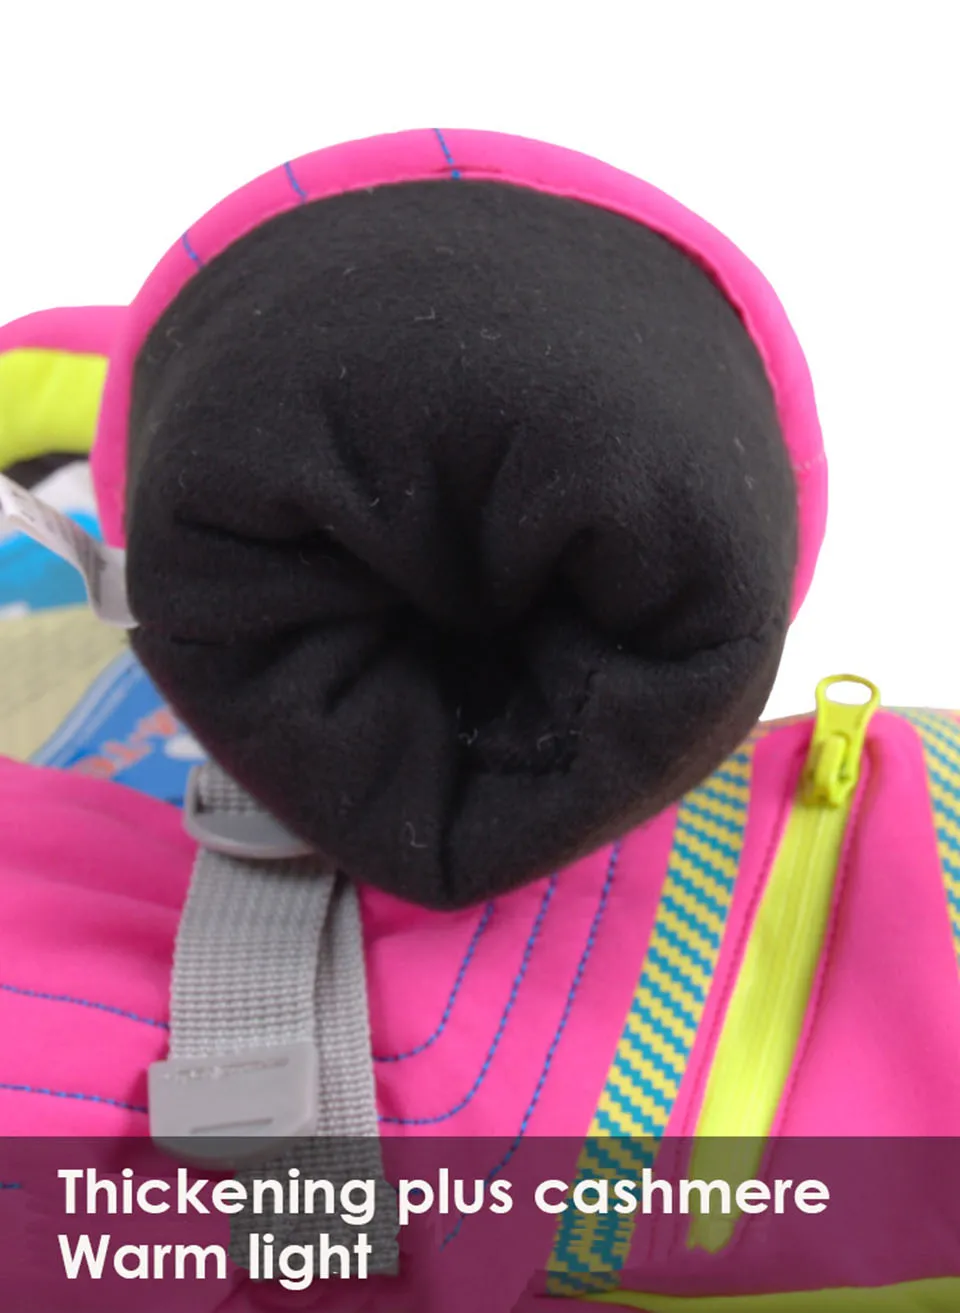 Marsnow/зимние профессиональные лыжные перчатки для девочек и мальчиков, водонепроницаемые теплые перчатки s, m, l, xl, ветрозащитные перчатки для катания на лыжах, сноуборда